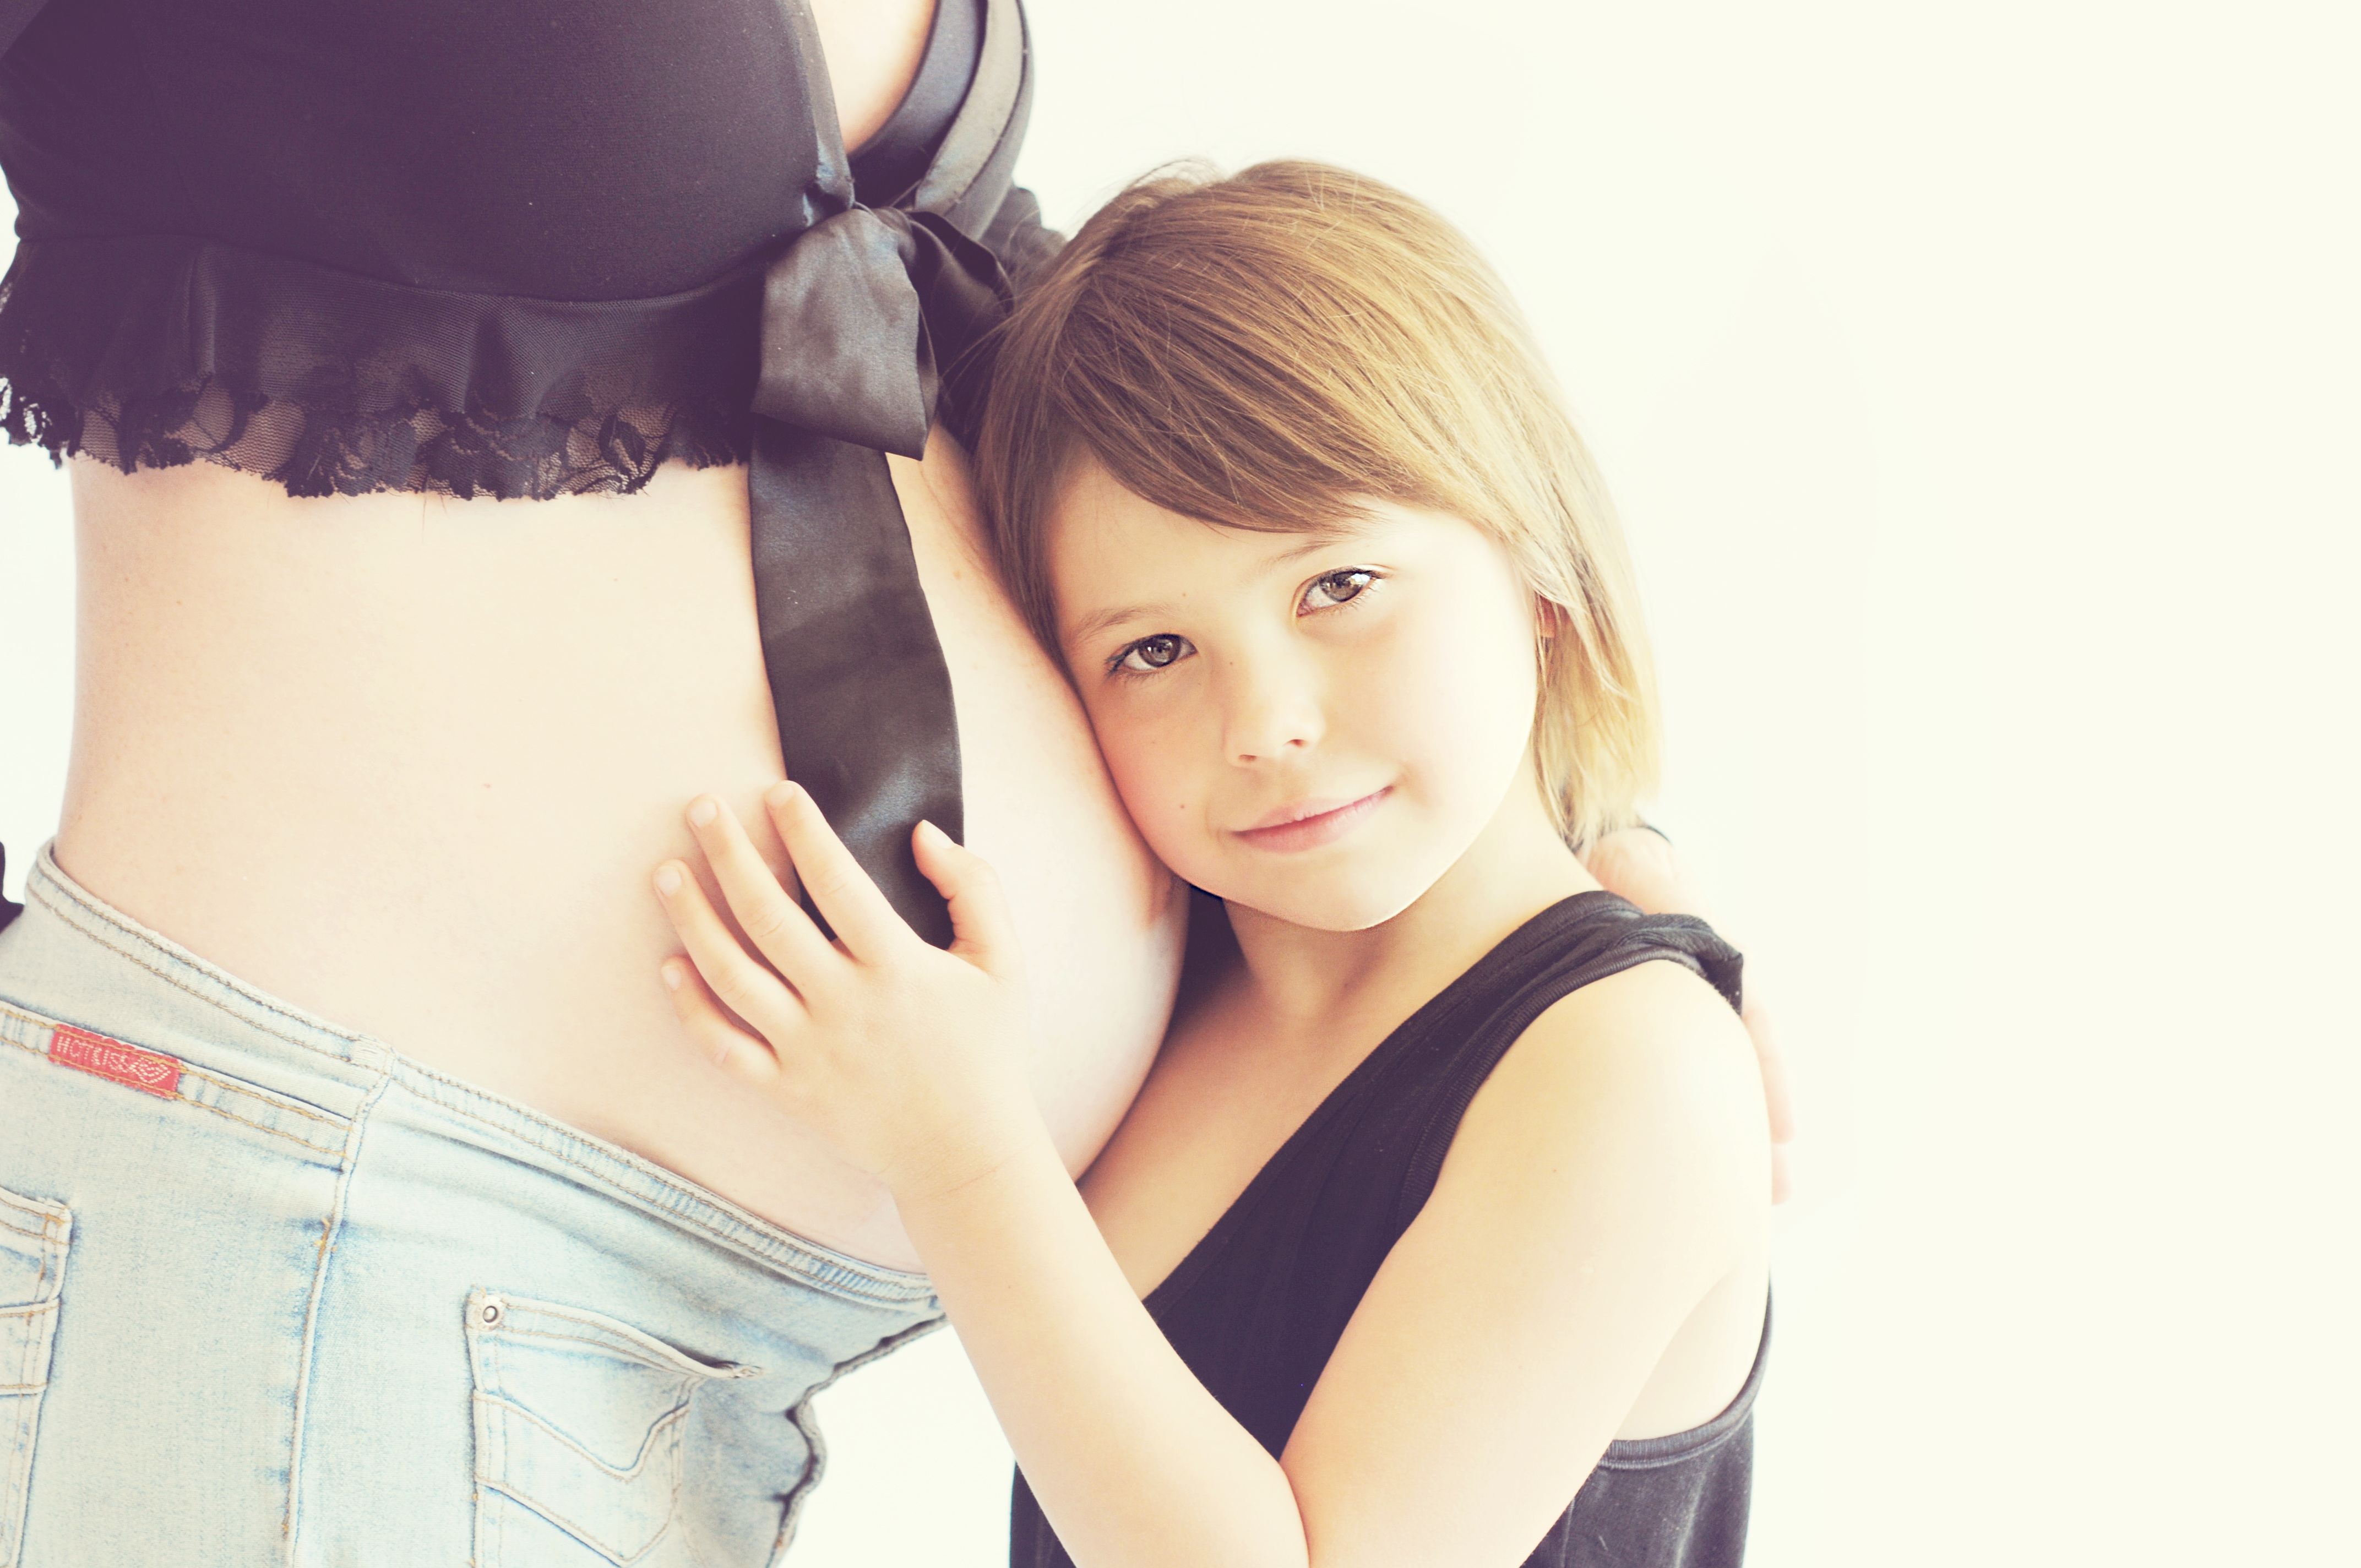 Maak je eigen geboortekrant zwangerschaps aankondiging - Happiedays